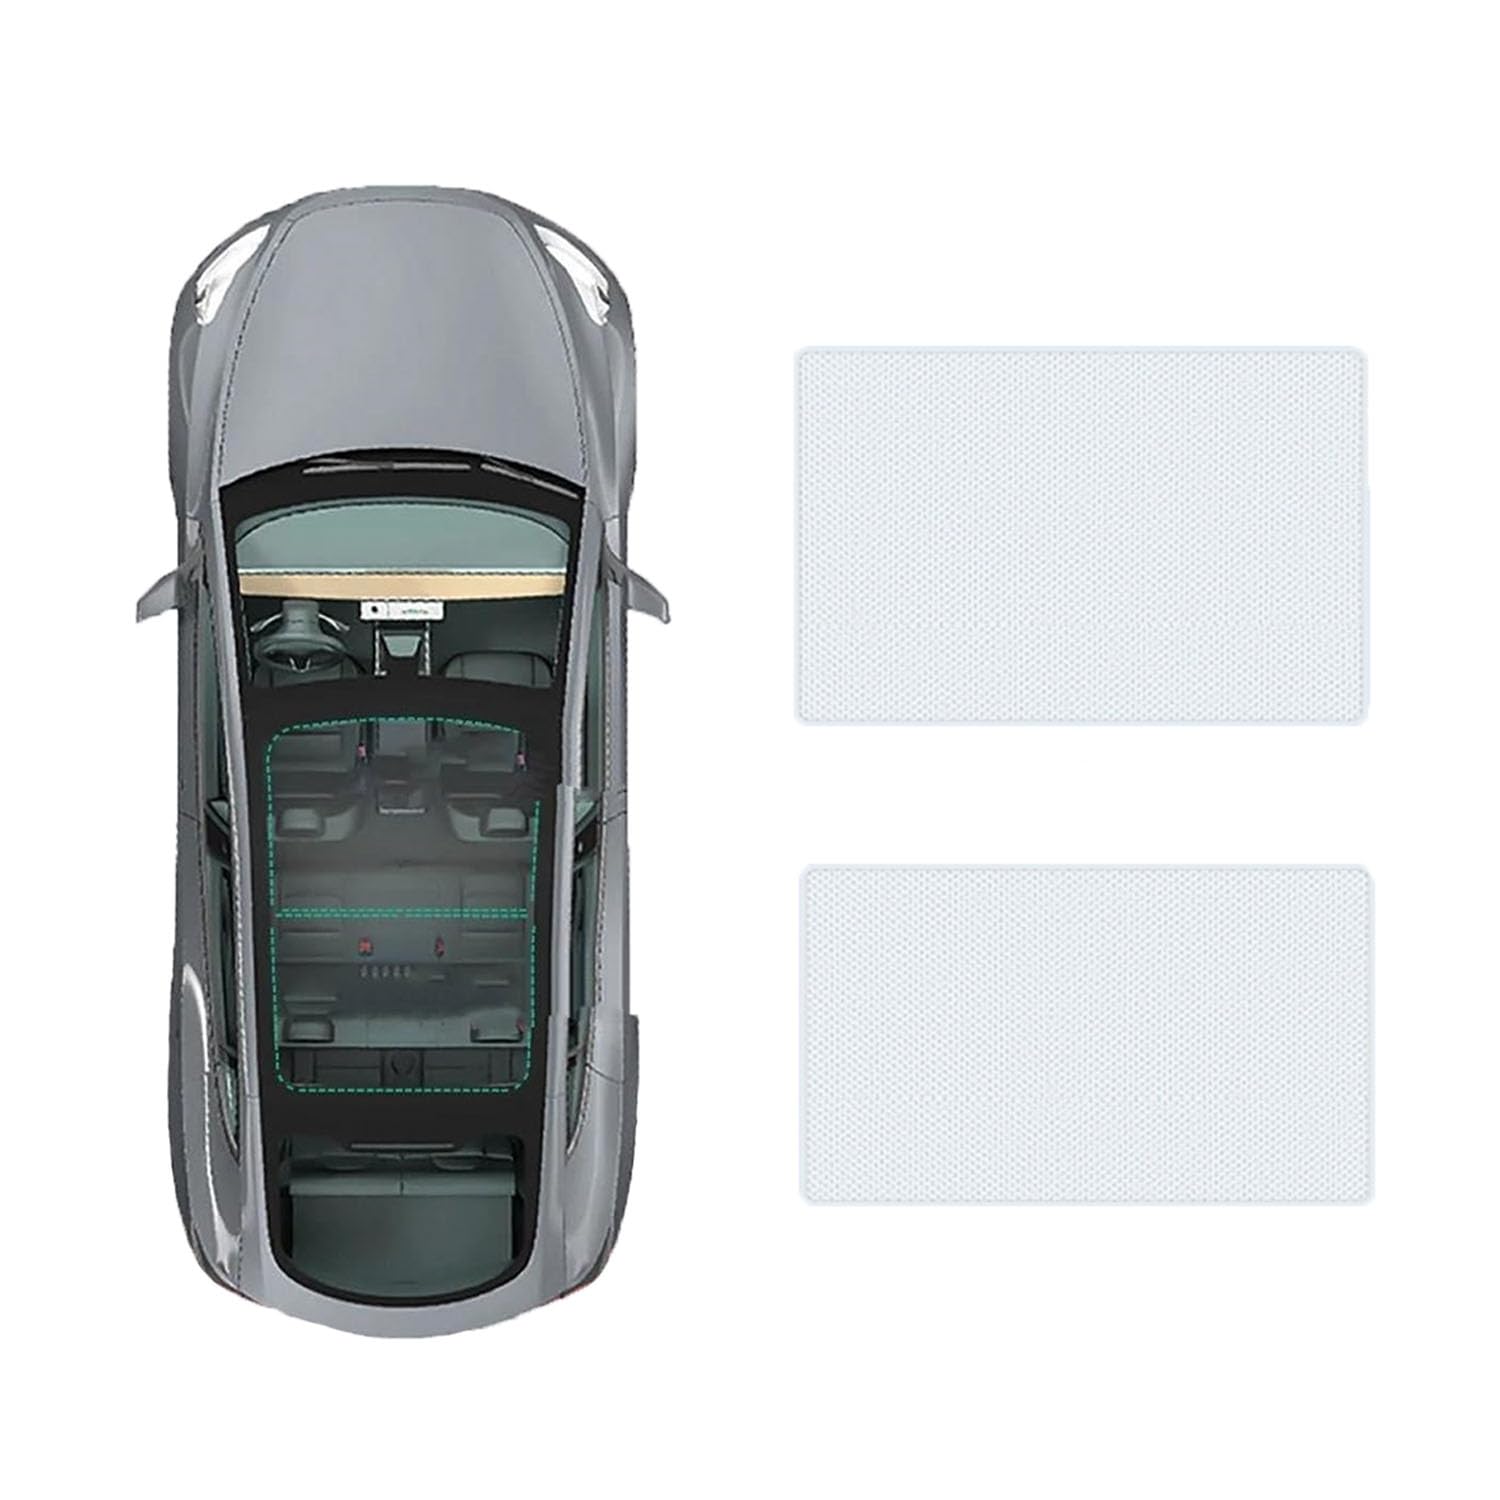 Auto-Schiebedach-Beschattung Für Land Rover Defender 2020-,Auto Schiebedach Sonnenschutz Dachfenster Dach Wärme Isolierung Beschattung Innen,A-Gray white regular Style von LiuROSE